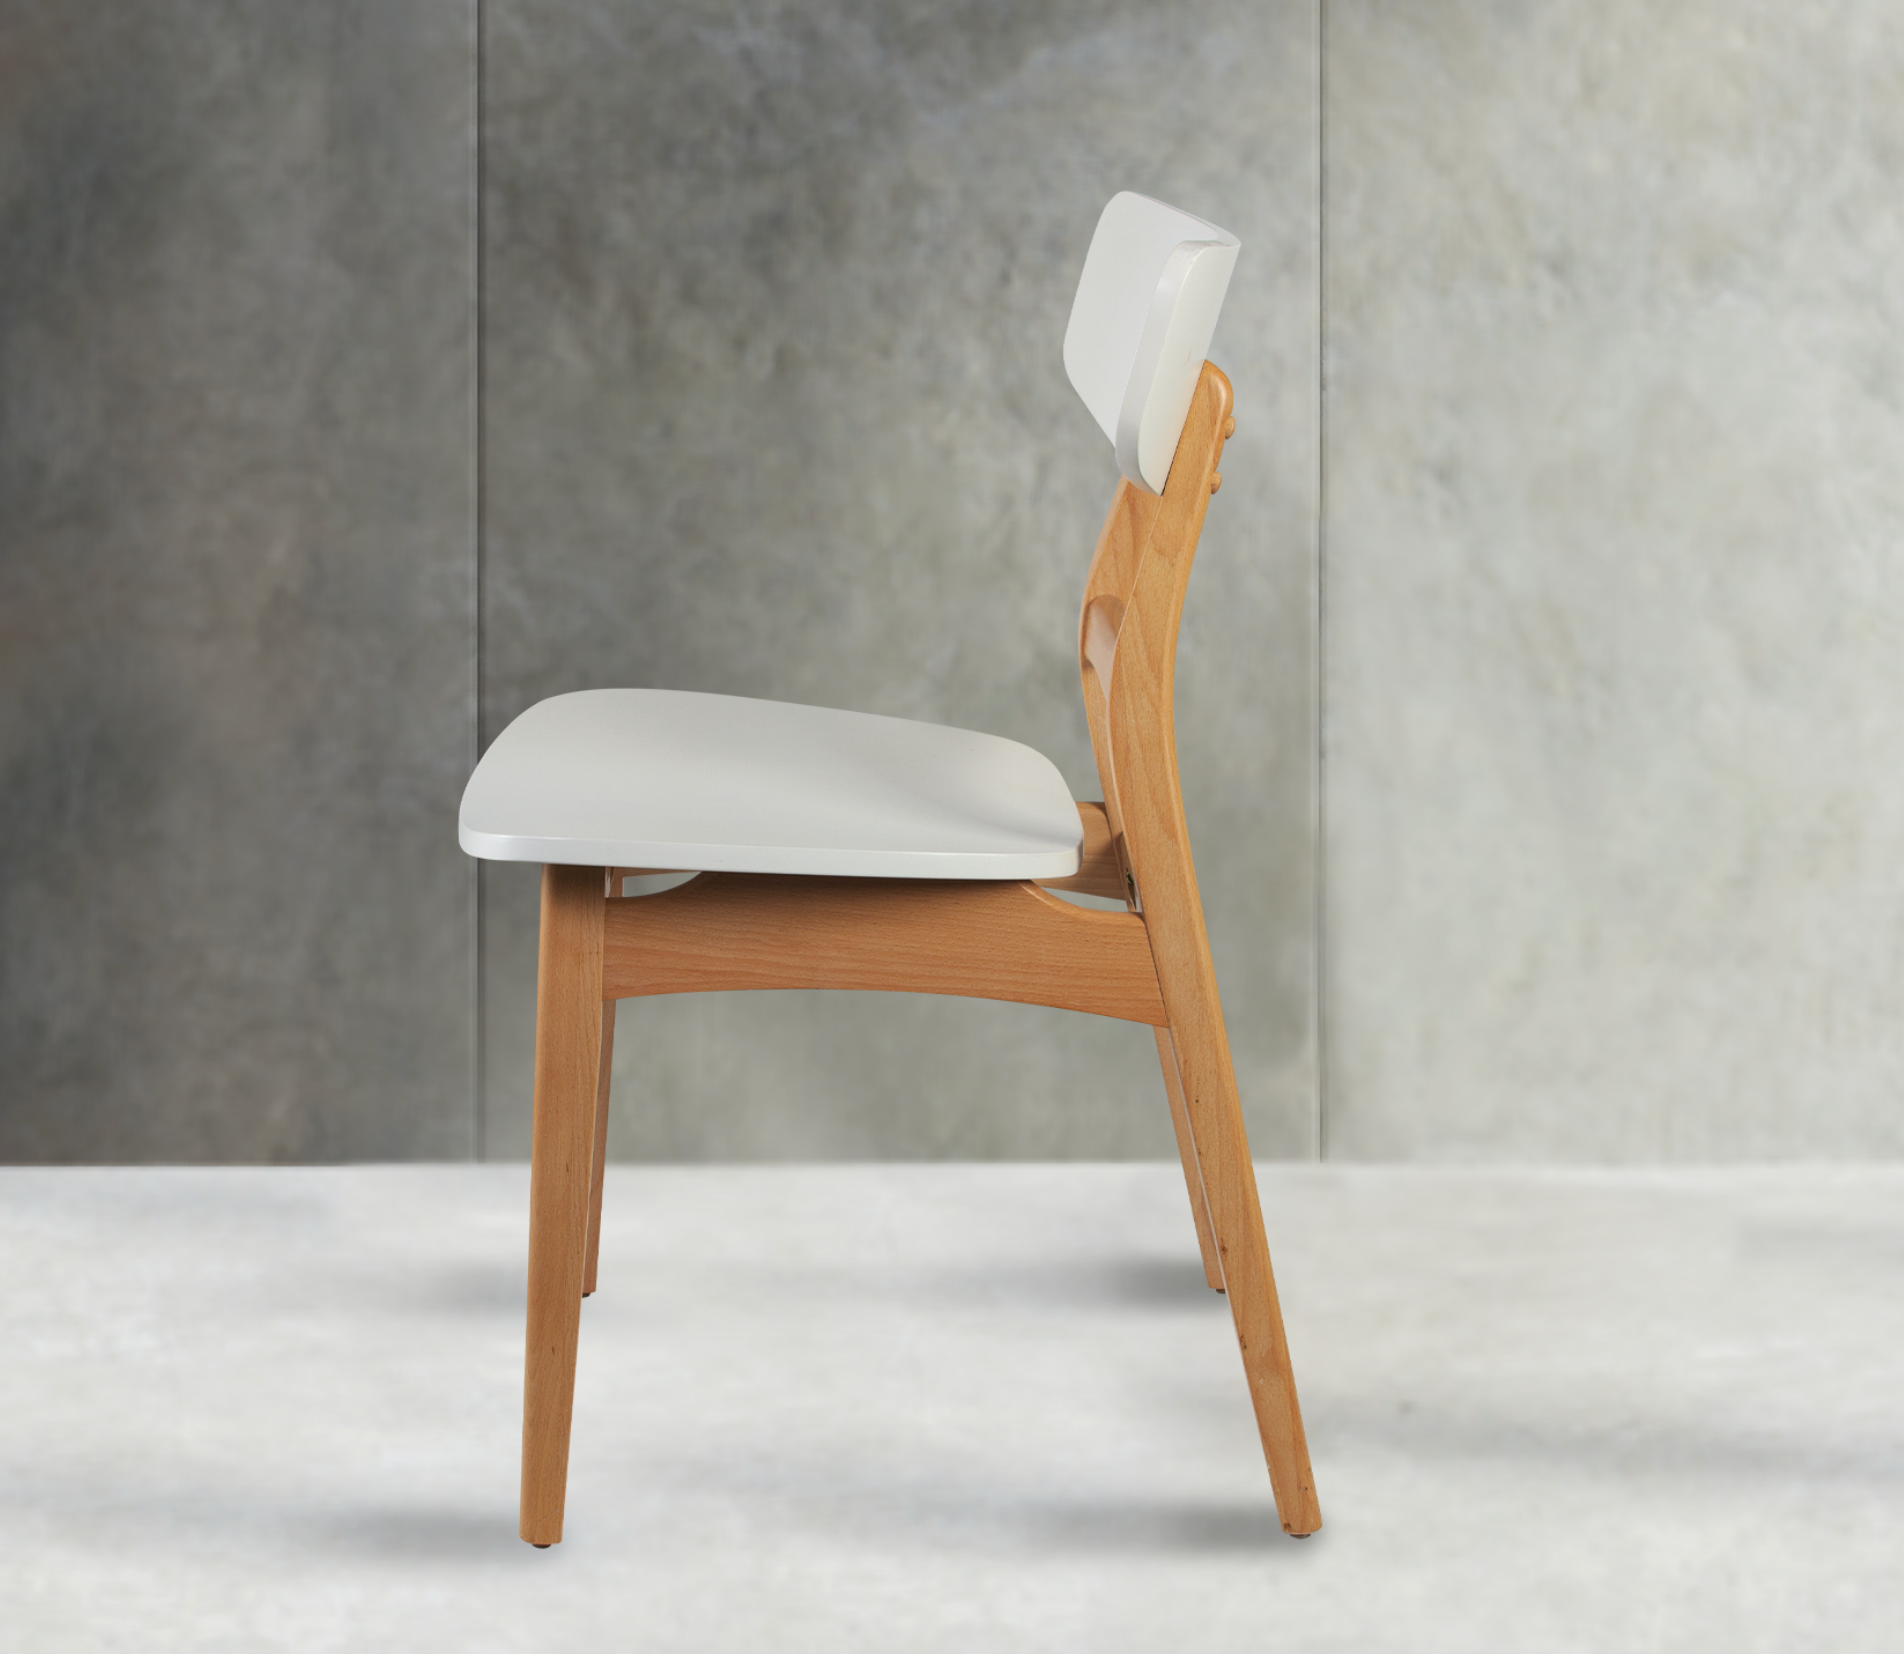 白雪森林椅 - joho-furniture